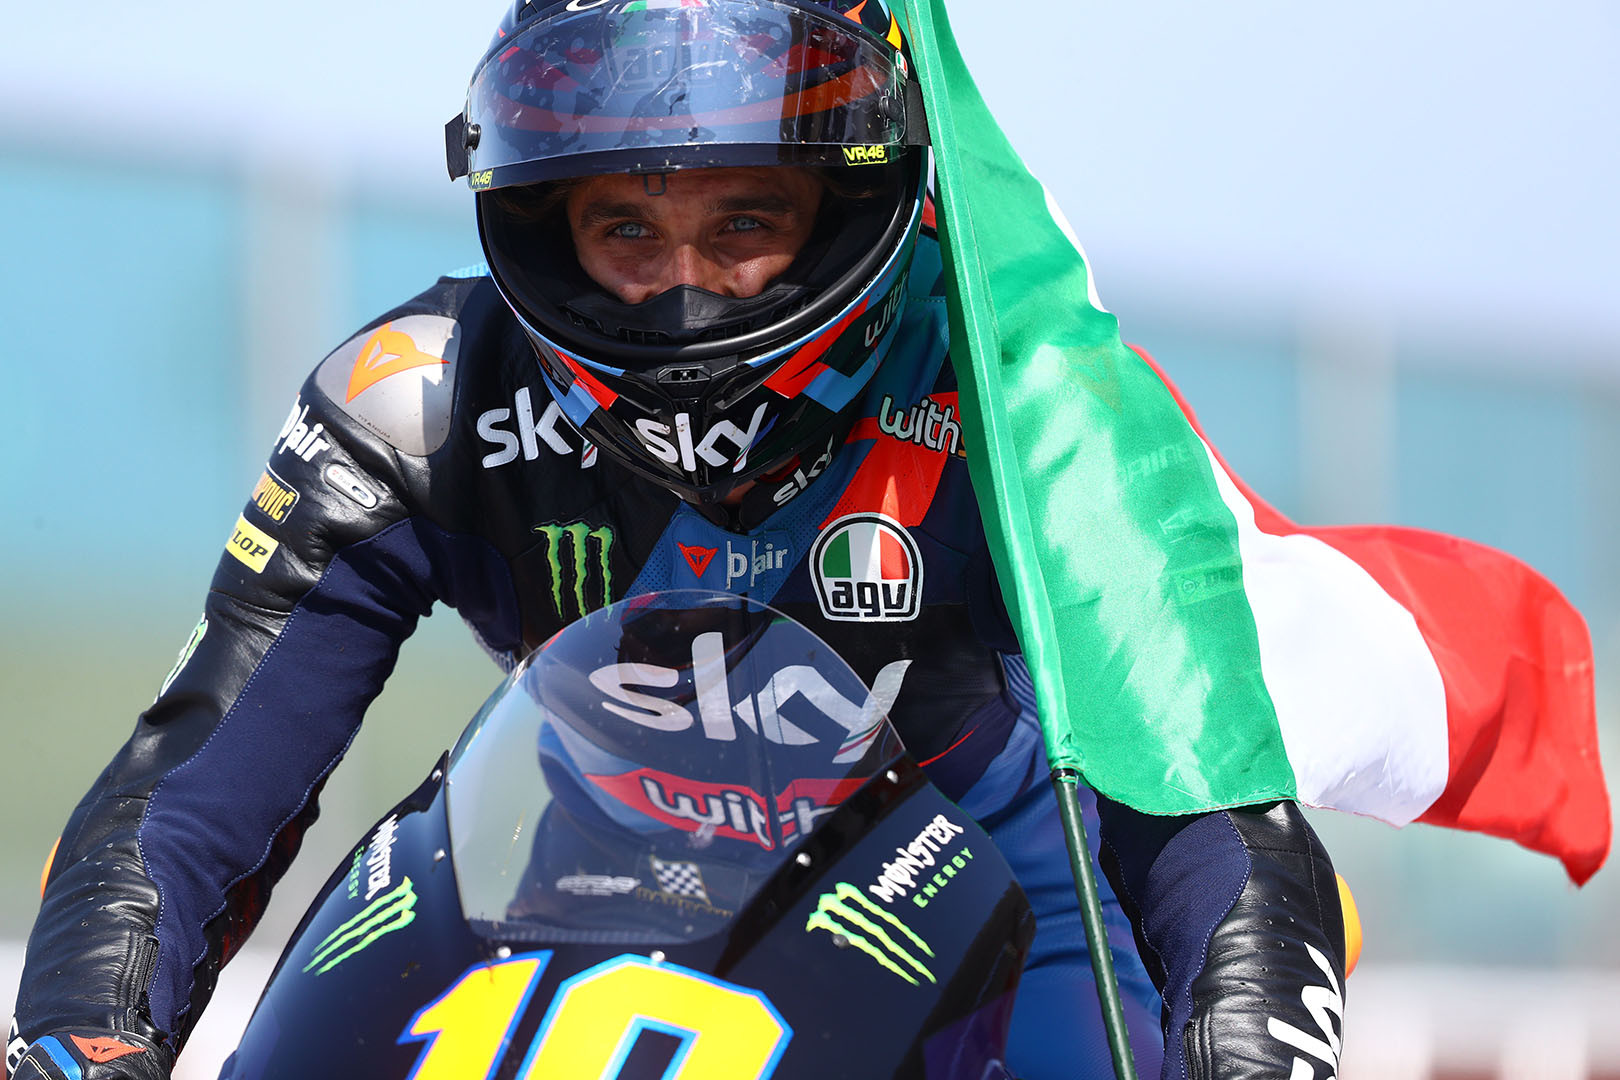 Luca Marini won the Moto2 race at Misano I. Photo courtesy Triumph.